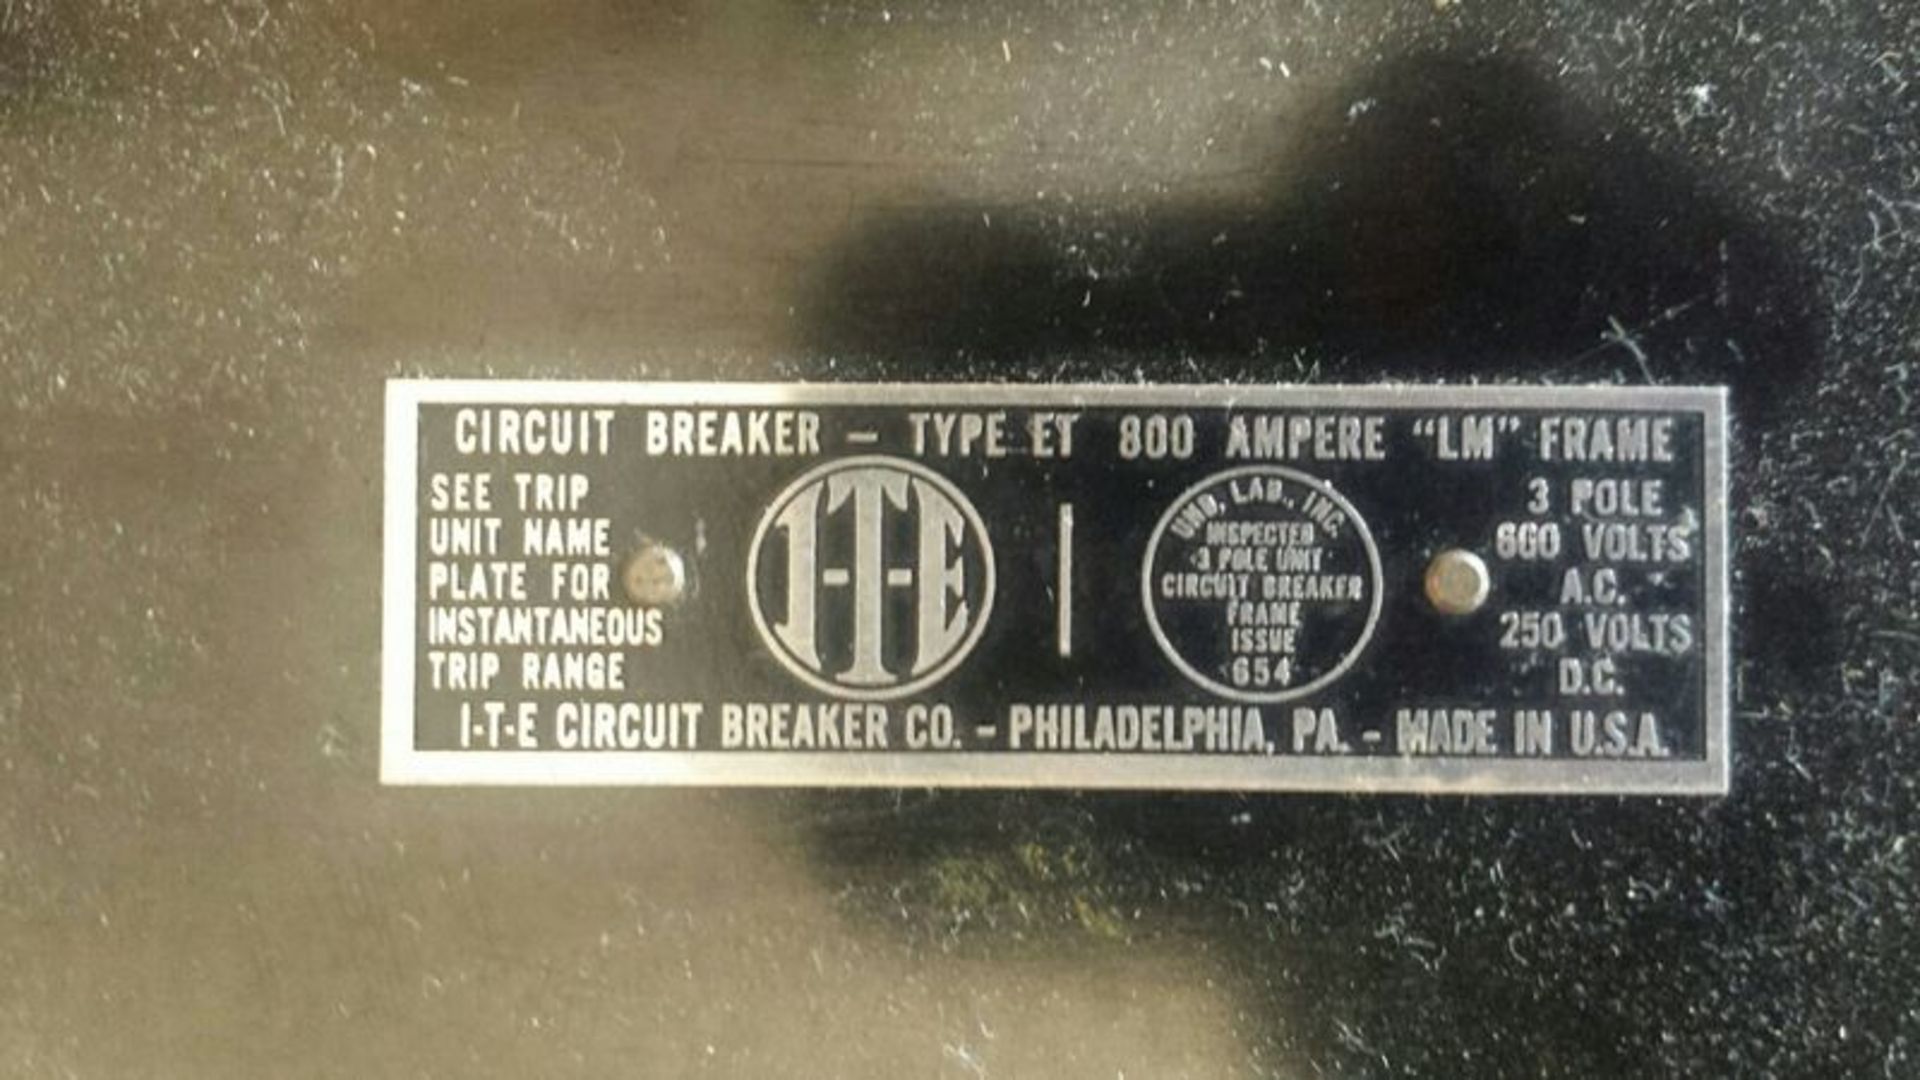 (5)FPE Fusematic Circuit Breakers (2) FPE XM XM633150 (3) FPE XKL(2) I-T-E Type ET 800 Amp “LM” - Image 2 of 3